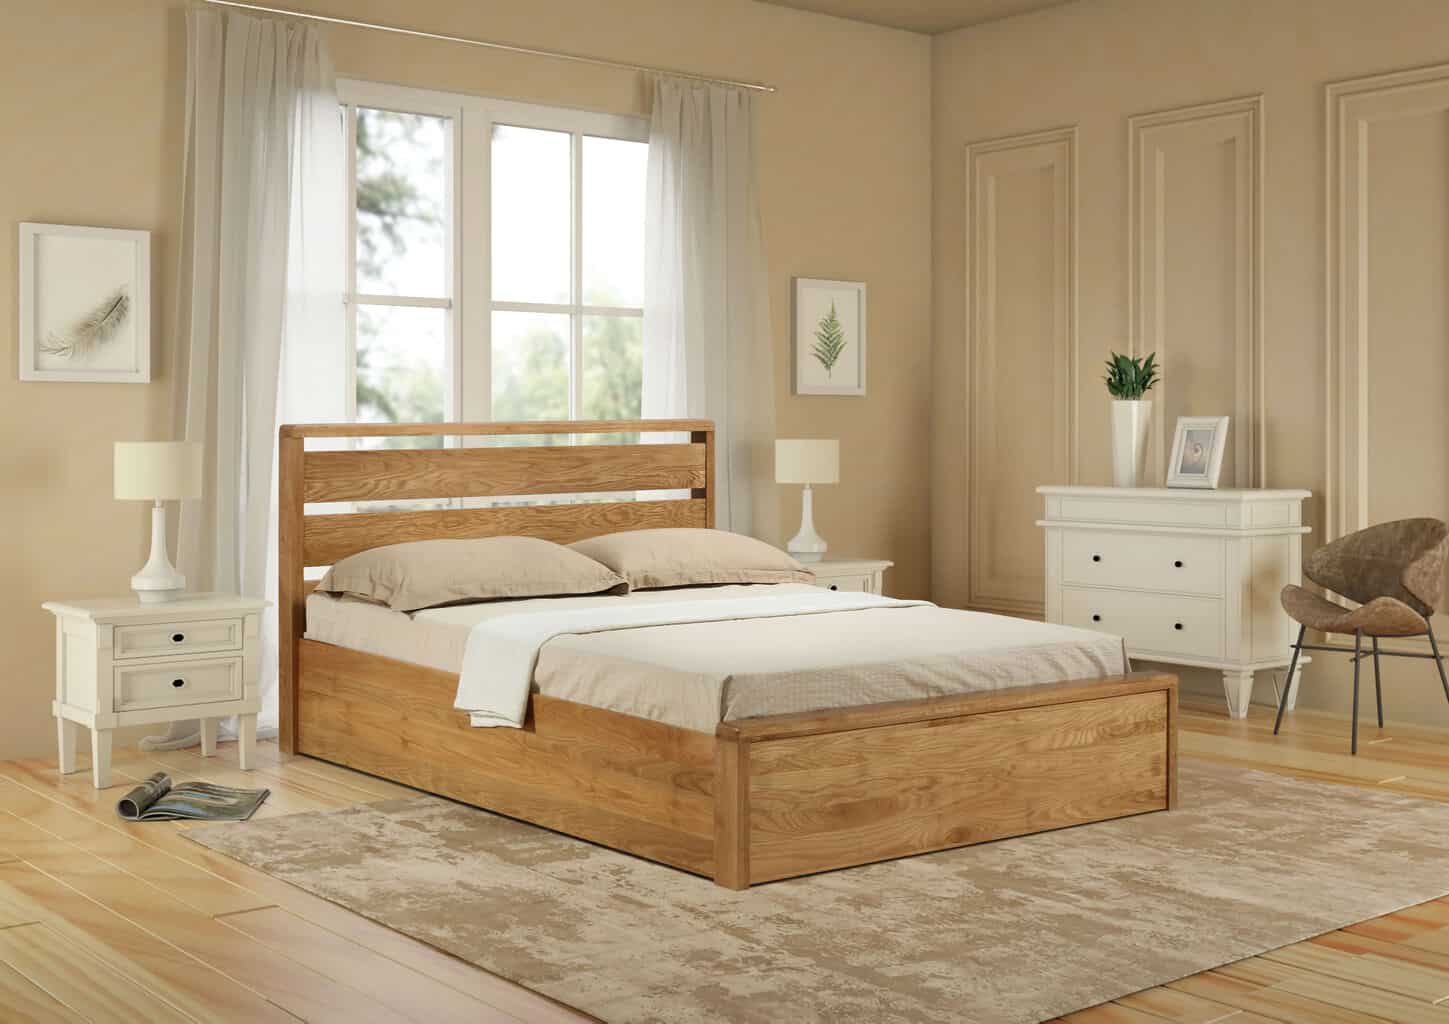 Modena bed frame